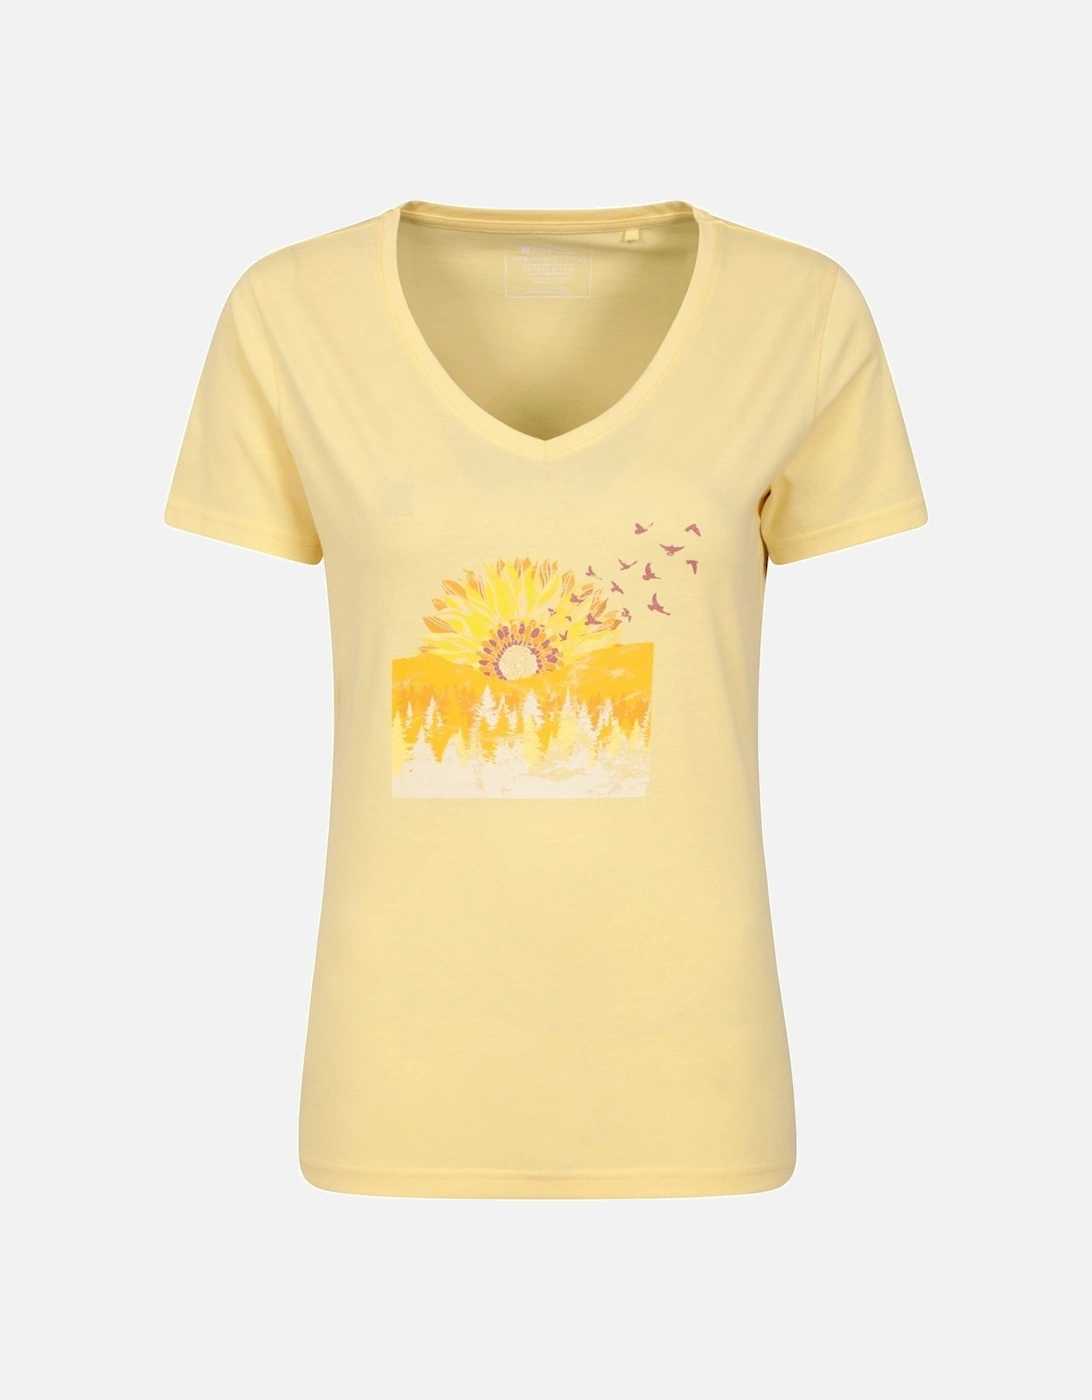 Womens/Ladies Sunflower T-Shirt, 6 of 5